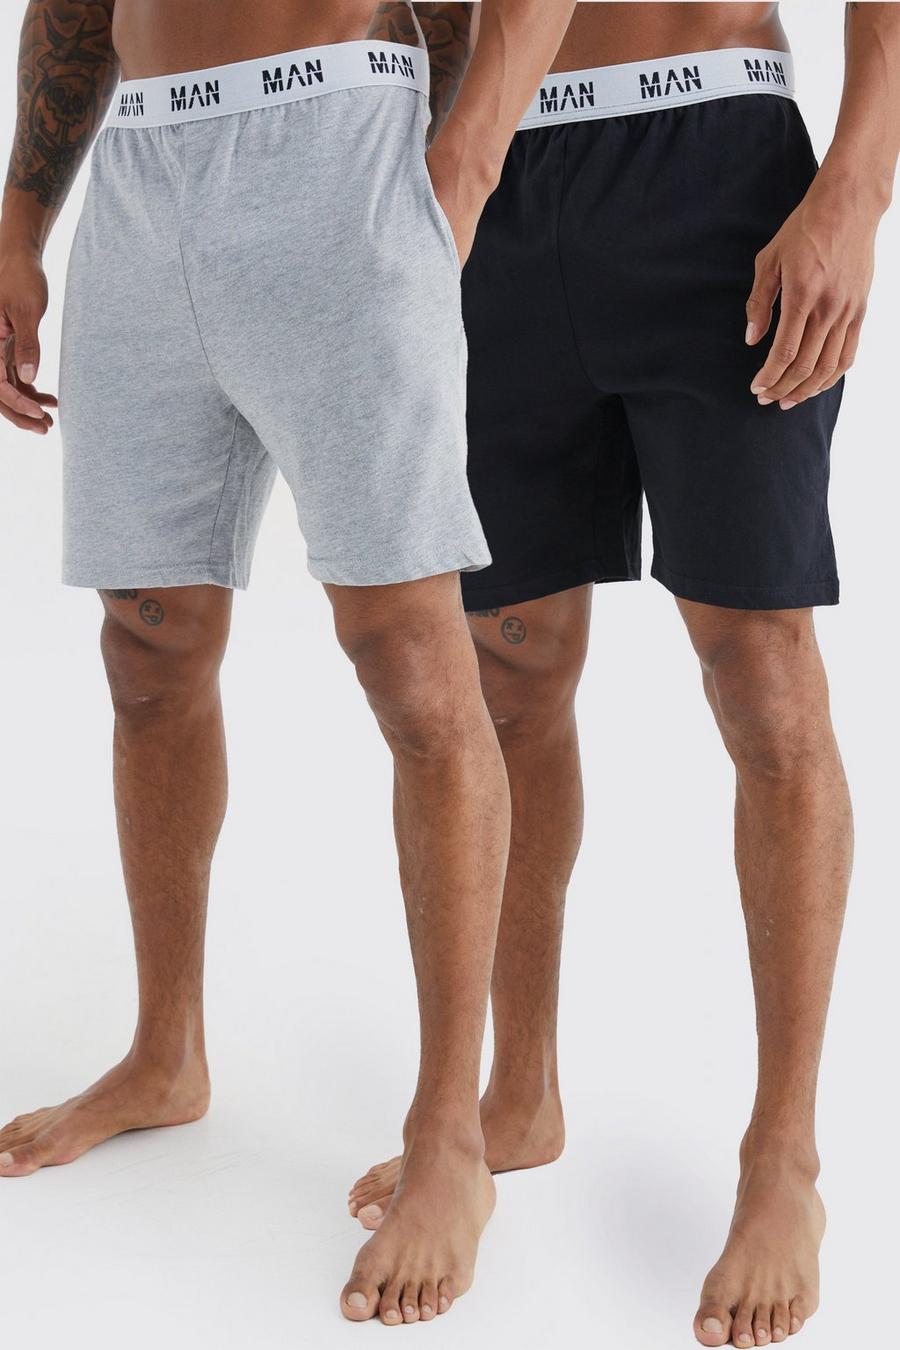 Multi Man Loungewear Shorts (2 Stuks)